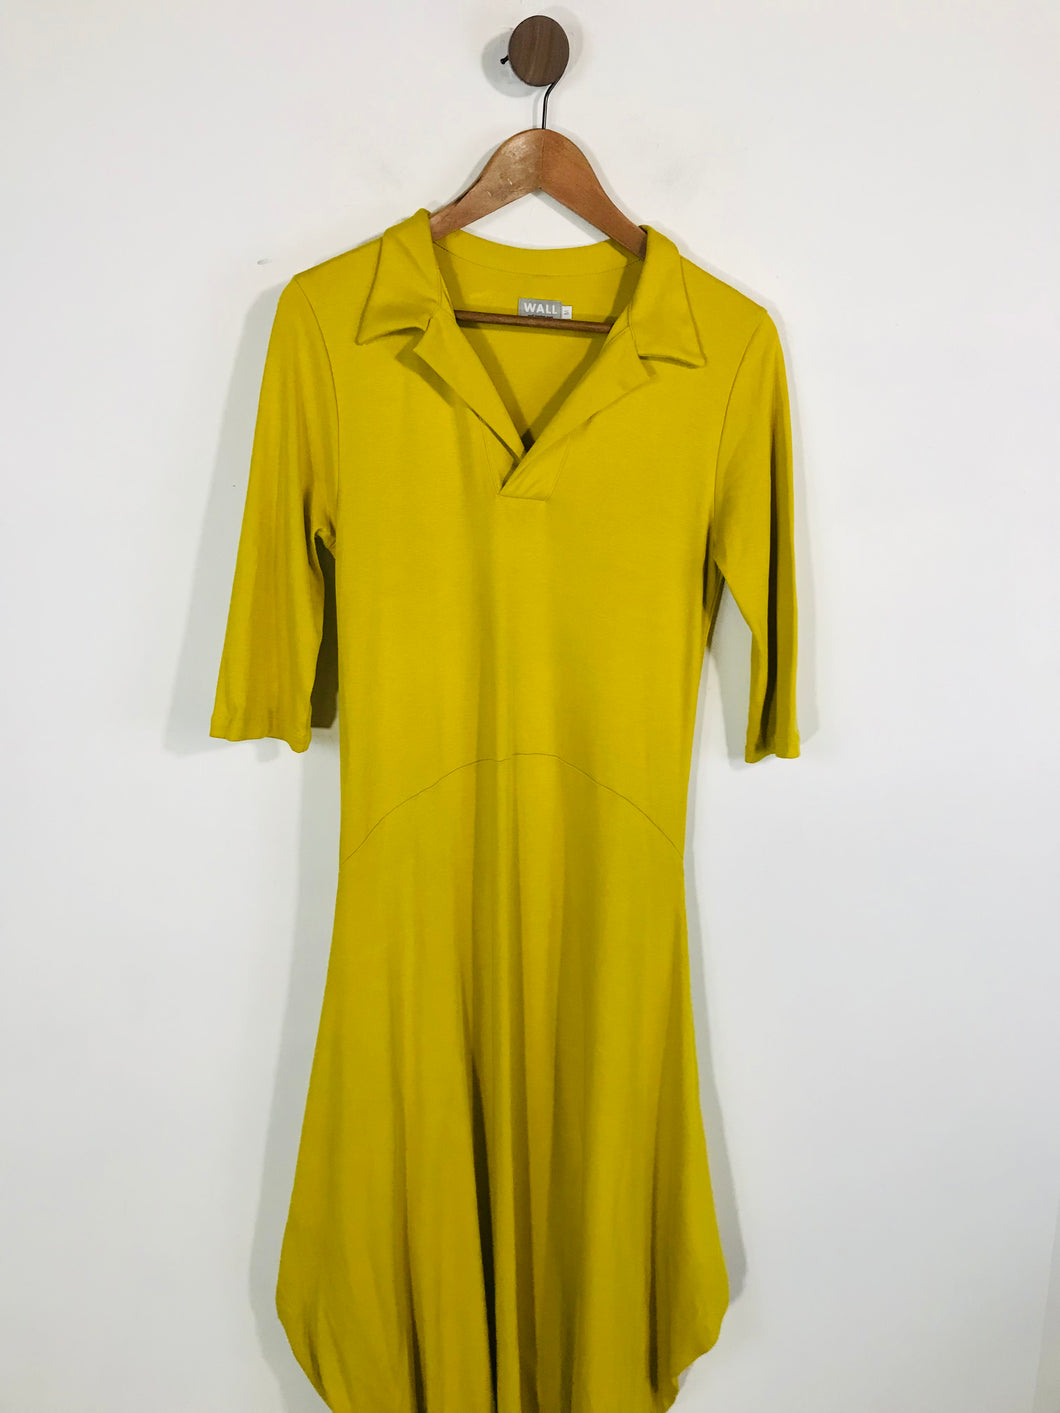 Wall London Women's Cotton Asymmetric A-Line Dress | M UK10-12 | Yellow